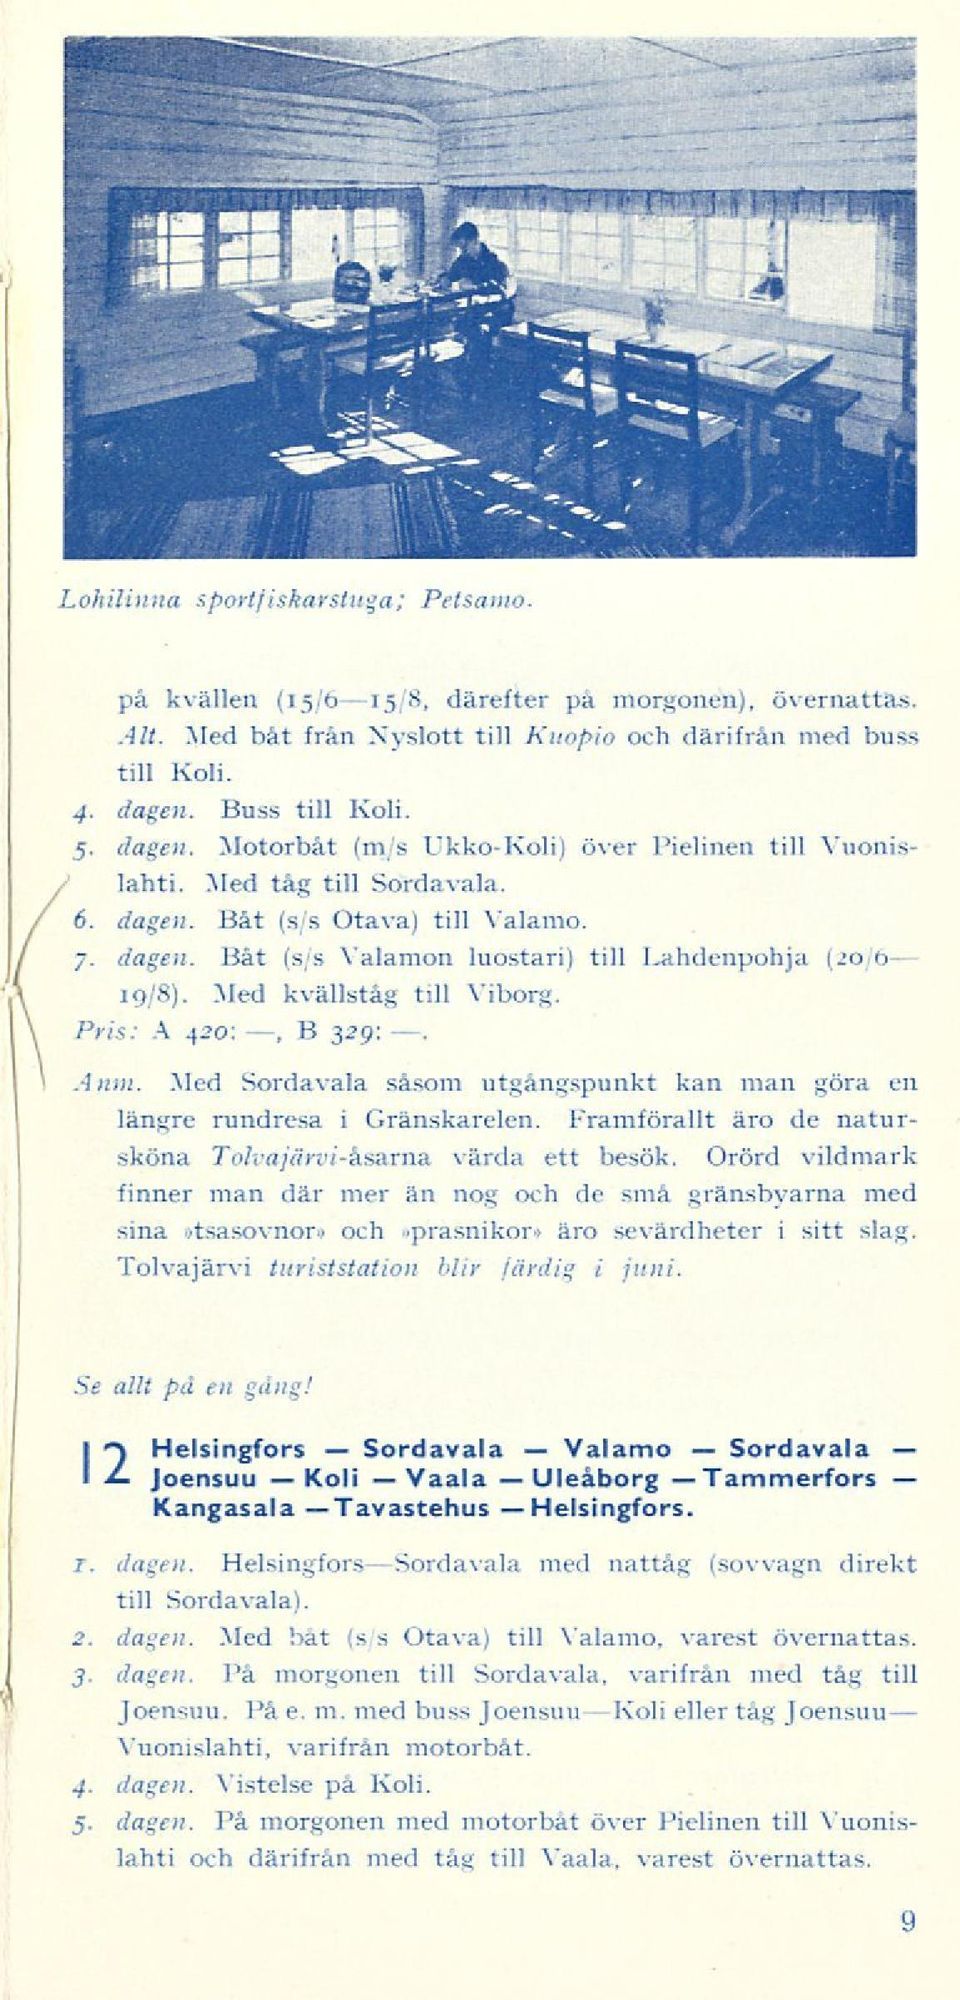 7. dagen. Båt (s/s Valamon luostari) till Lahdenpohja (20/6 19/8). Med kvällståg till Viborg. Pris: A 420:, B 329: Anm. Med Sordavala såsom utgångspunkt kan man göra en längre rundresa i Granskarelen.